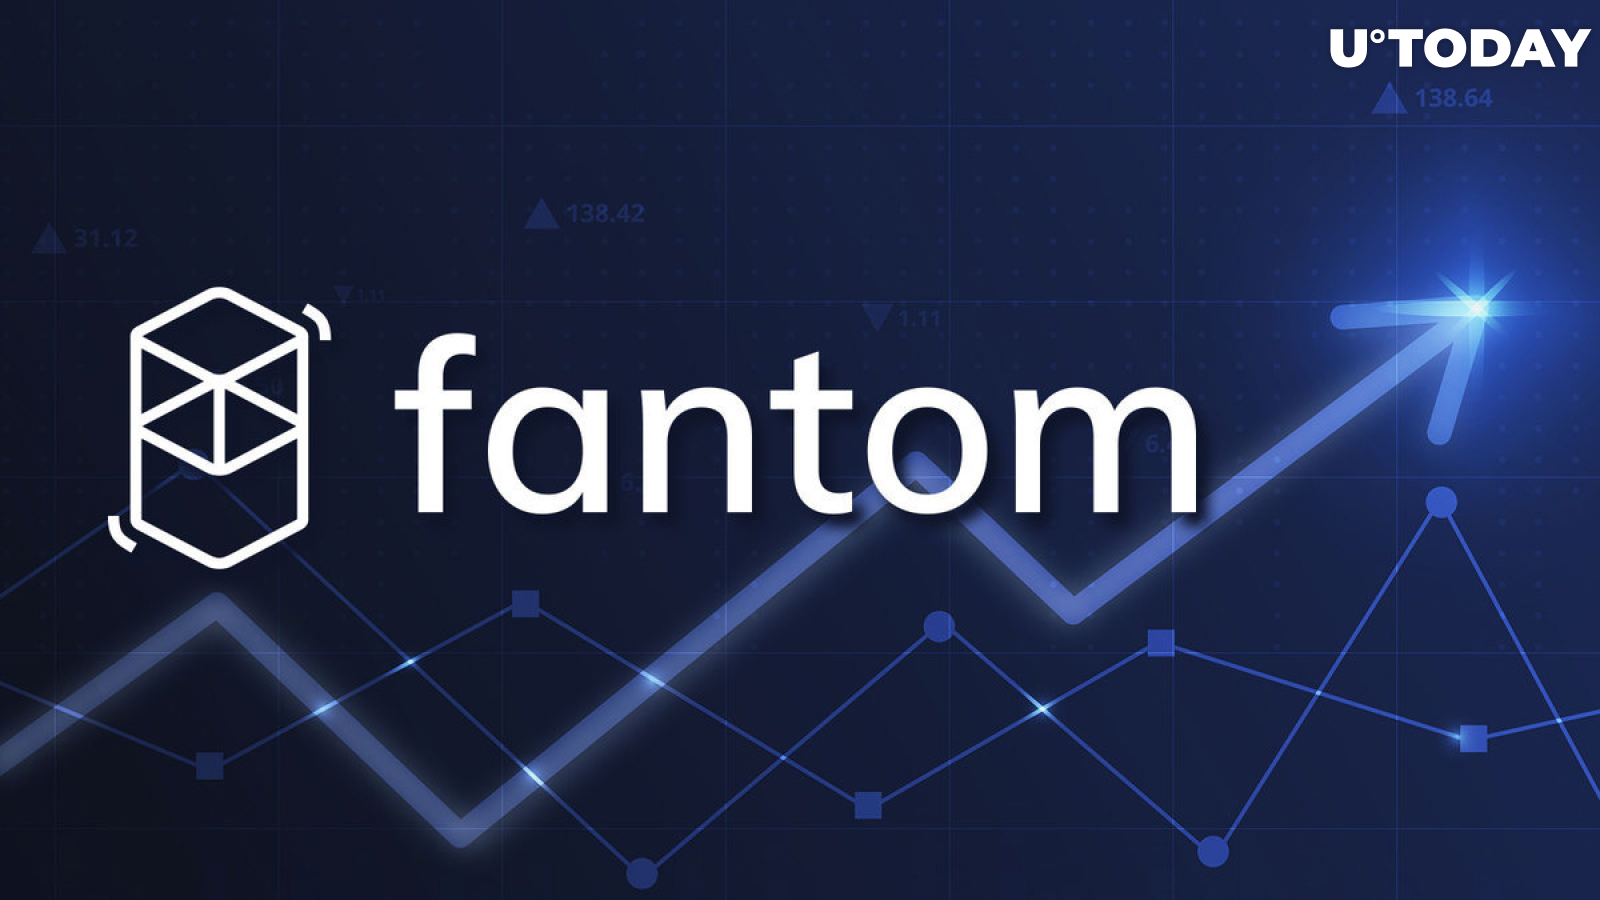 Fantom (FTM) Suddenly up 13%, What's Going On?